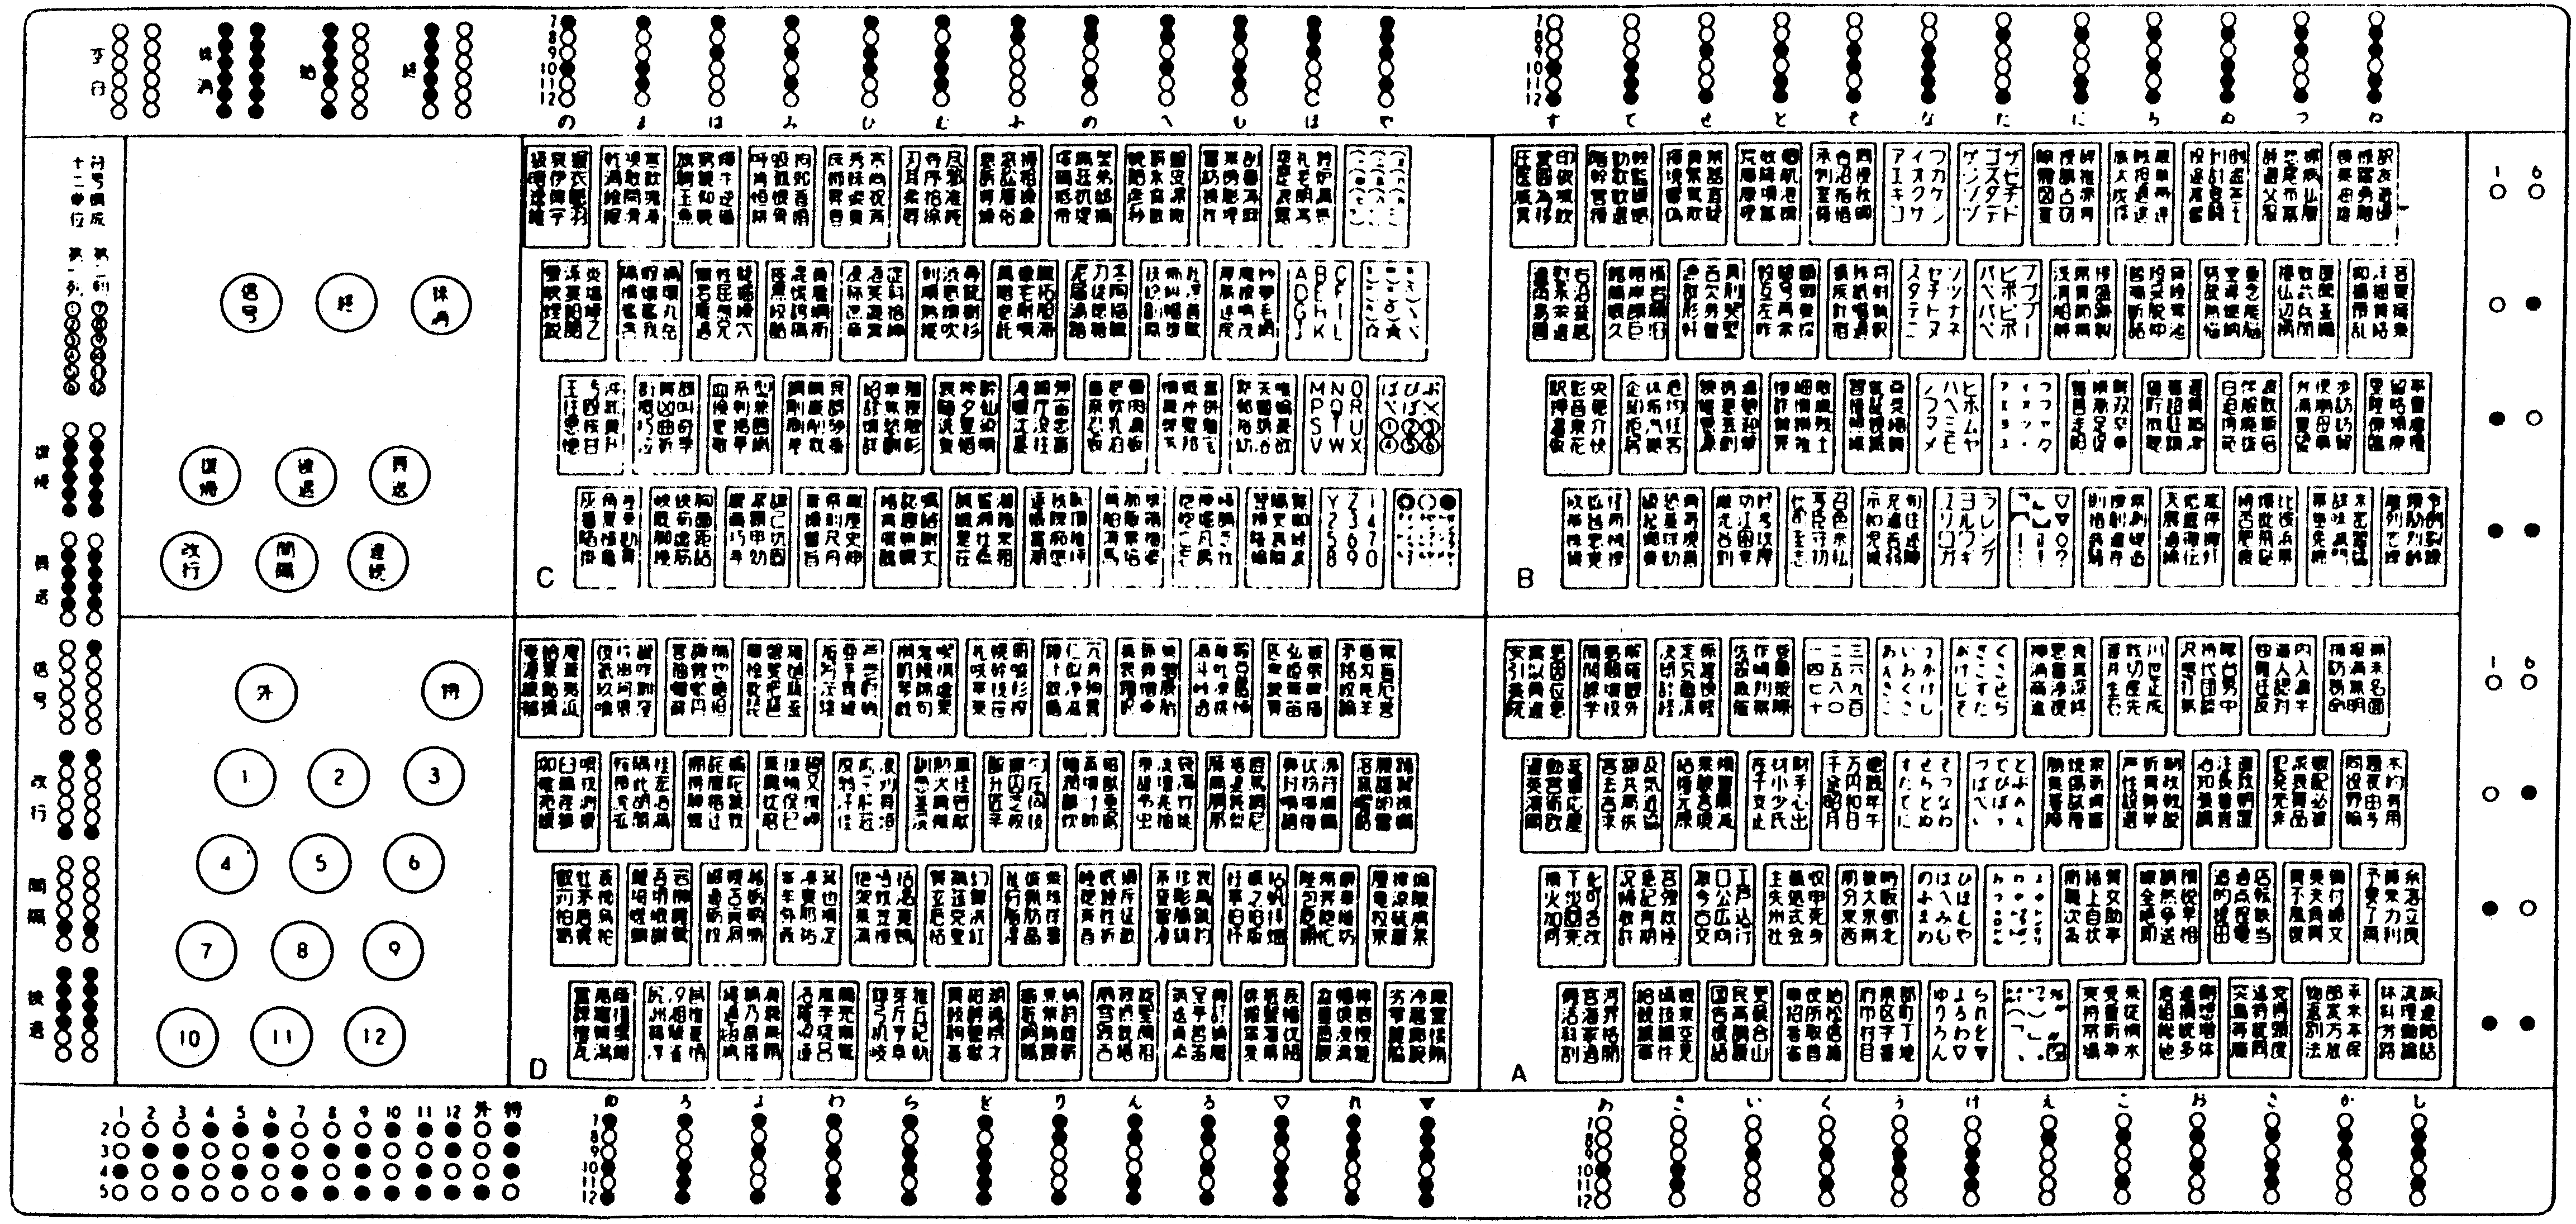 「漢字テレタイプ」のキーボード概念図